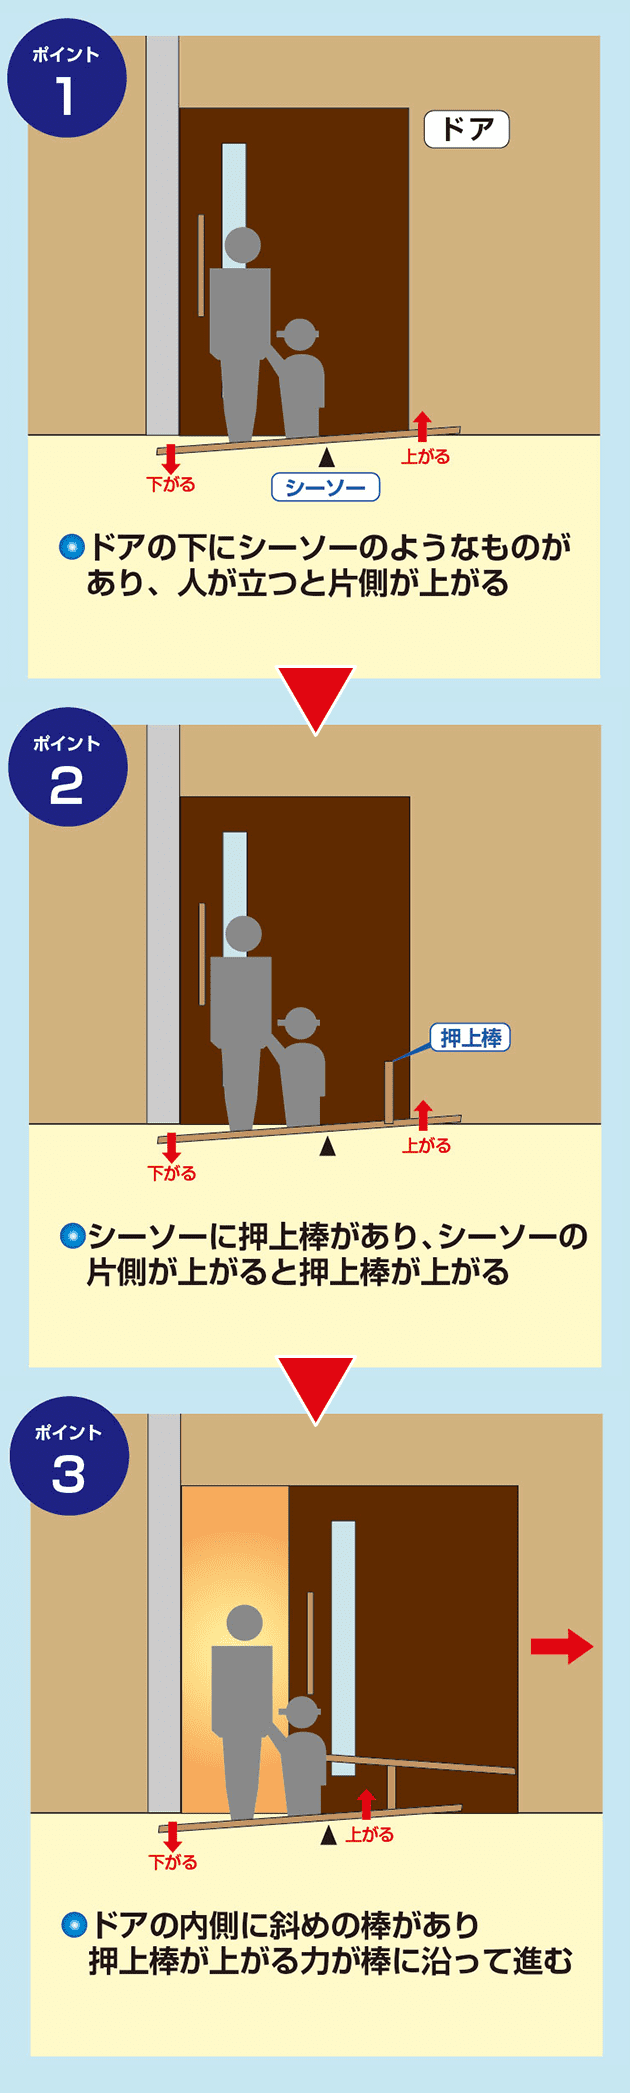 【ポイント1】ドアの下にシーソーのようなものがあり、人が立つと片側が上がる　【ポイント2】シーソーに押上棒があり、シーソーの片側が上がると押上棒が上がる　【ポイント3】ドアの内側に斜めの棒があり押上棒が上がる力が棒に沿って進む